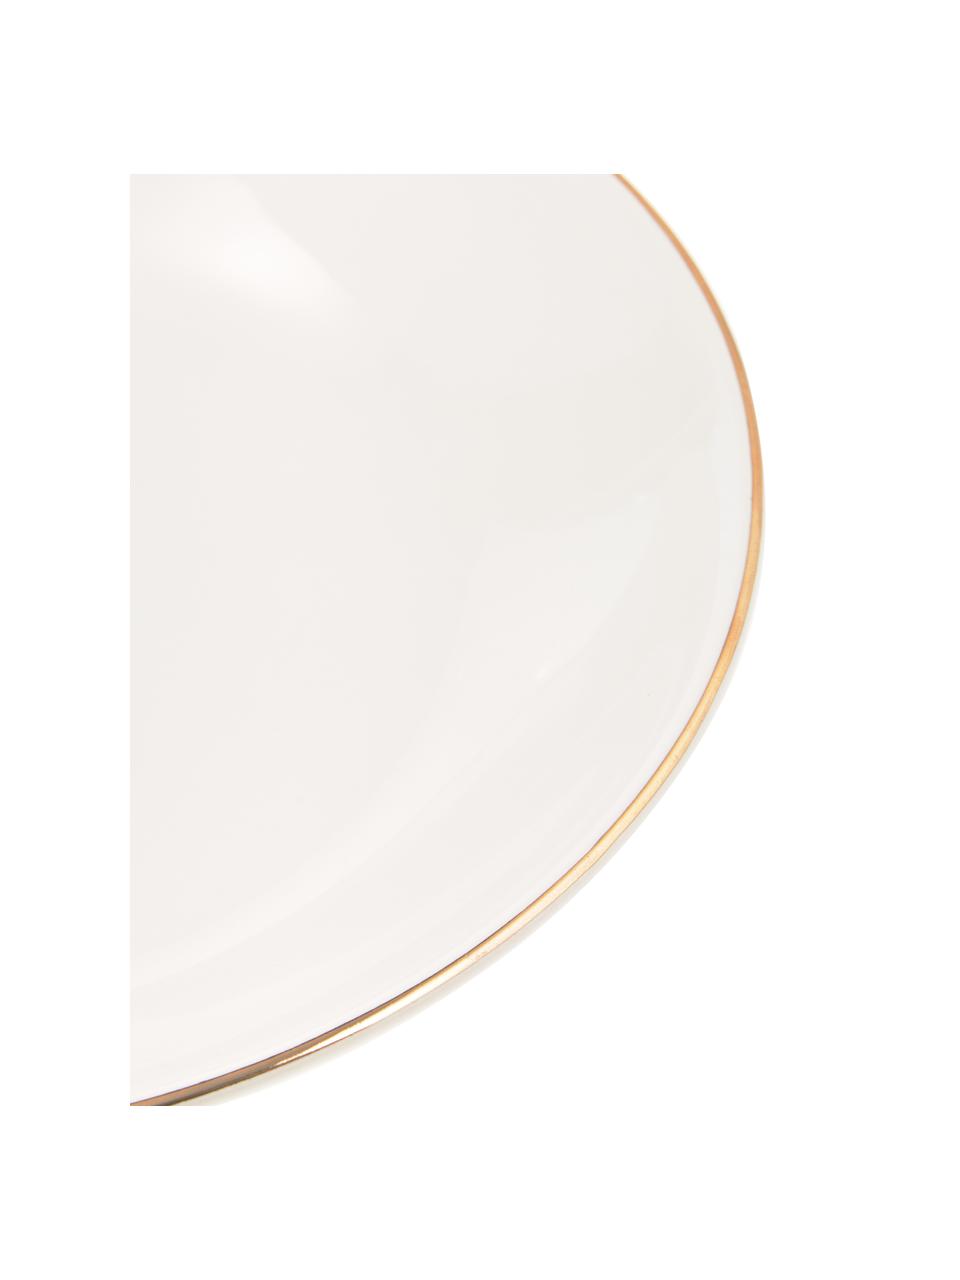 Ručně vyrobený hluboký talíř se zlatým okrajem Allure, 6 ks, Keramika, Bílá, zlatá, Ø 21 cm